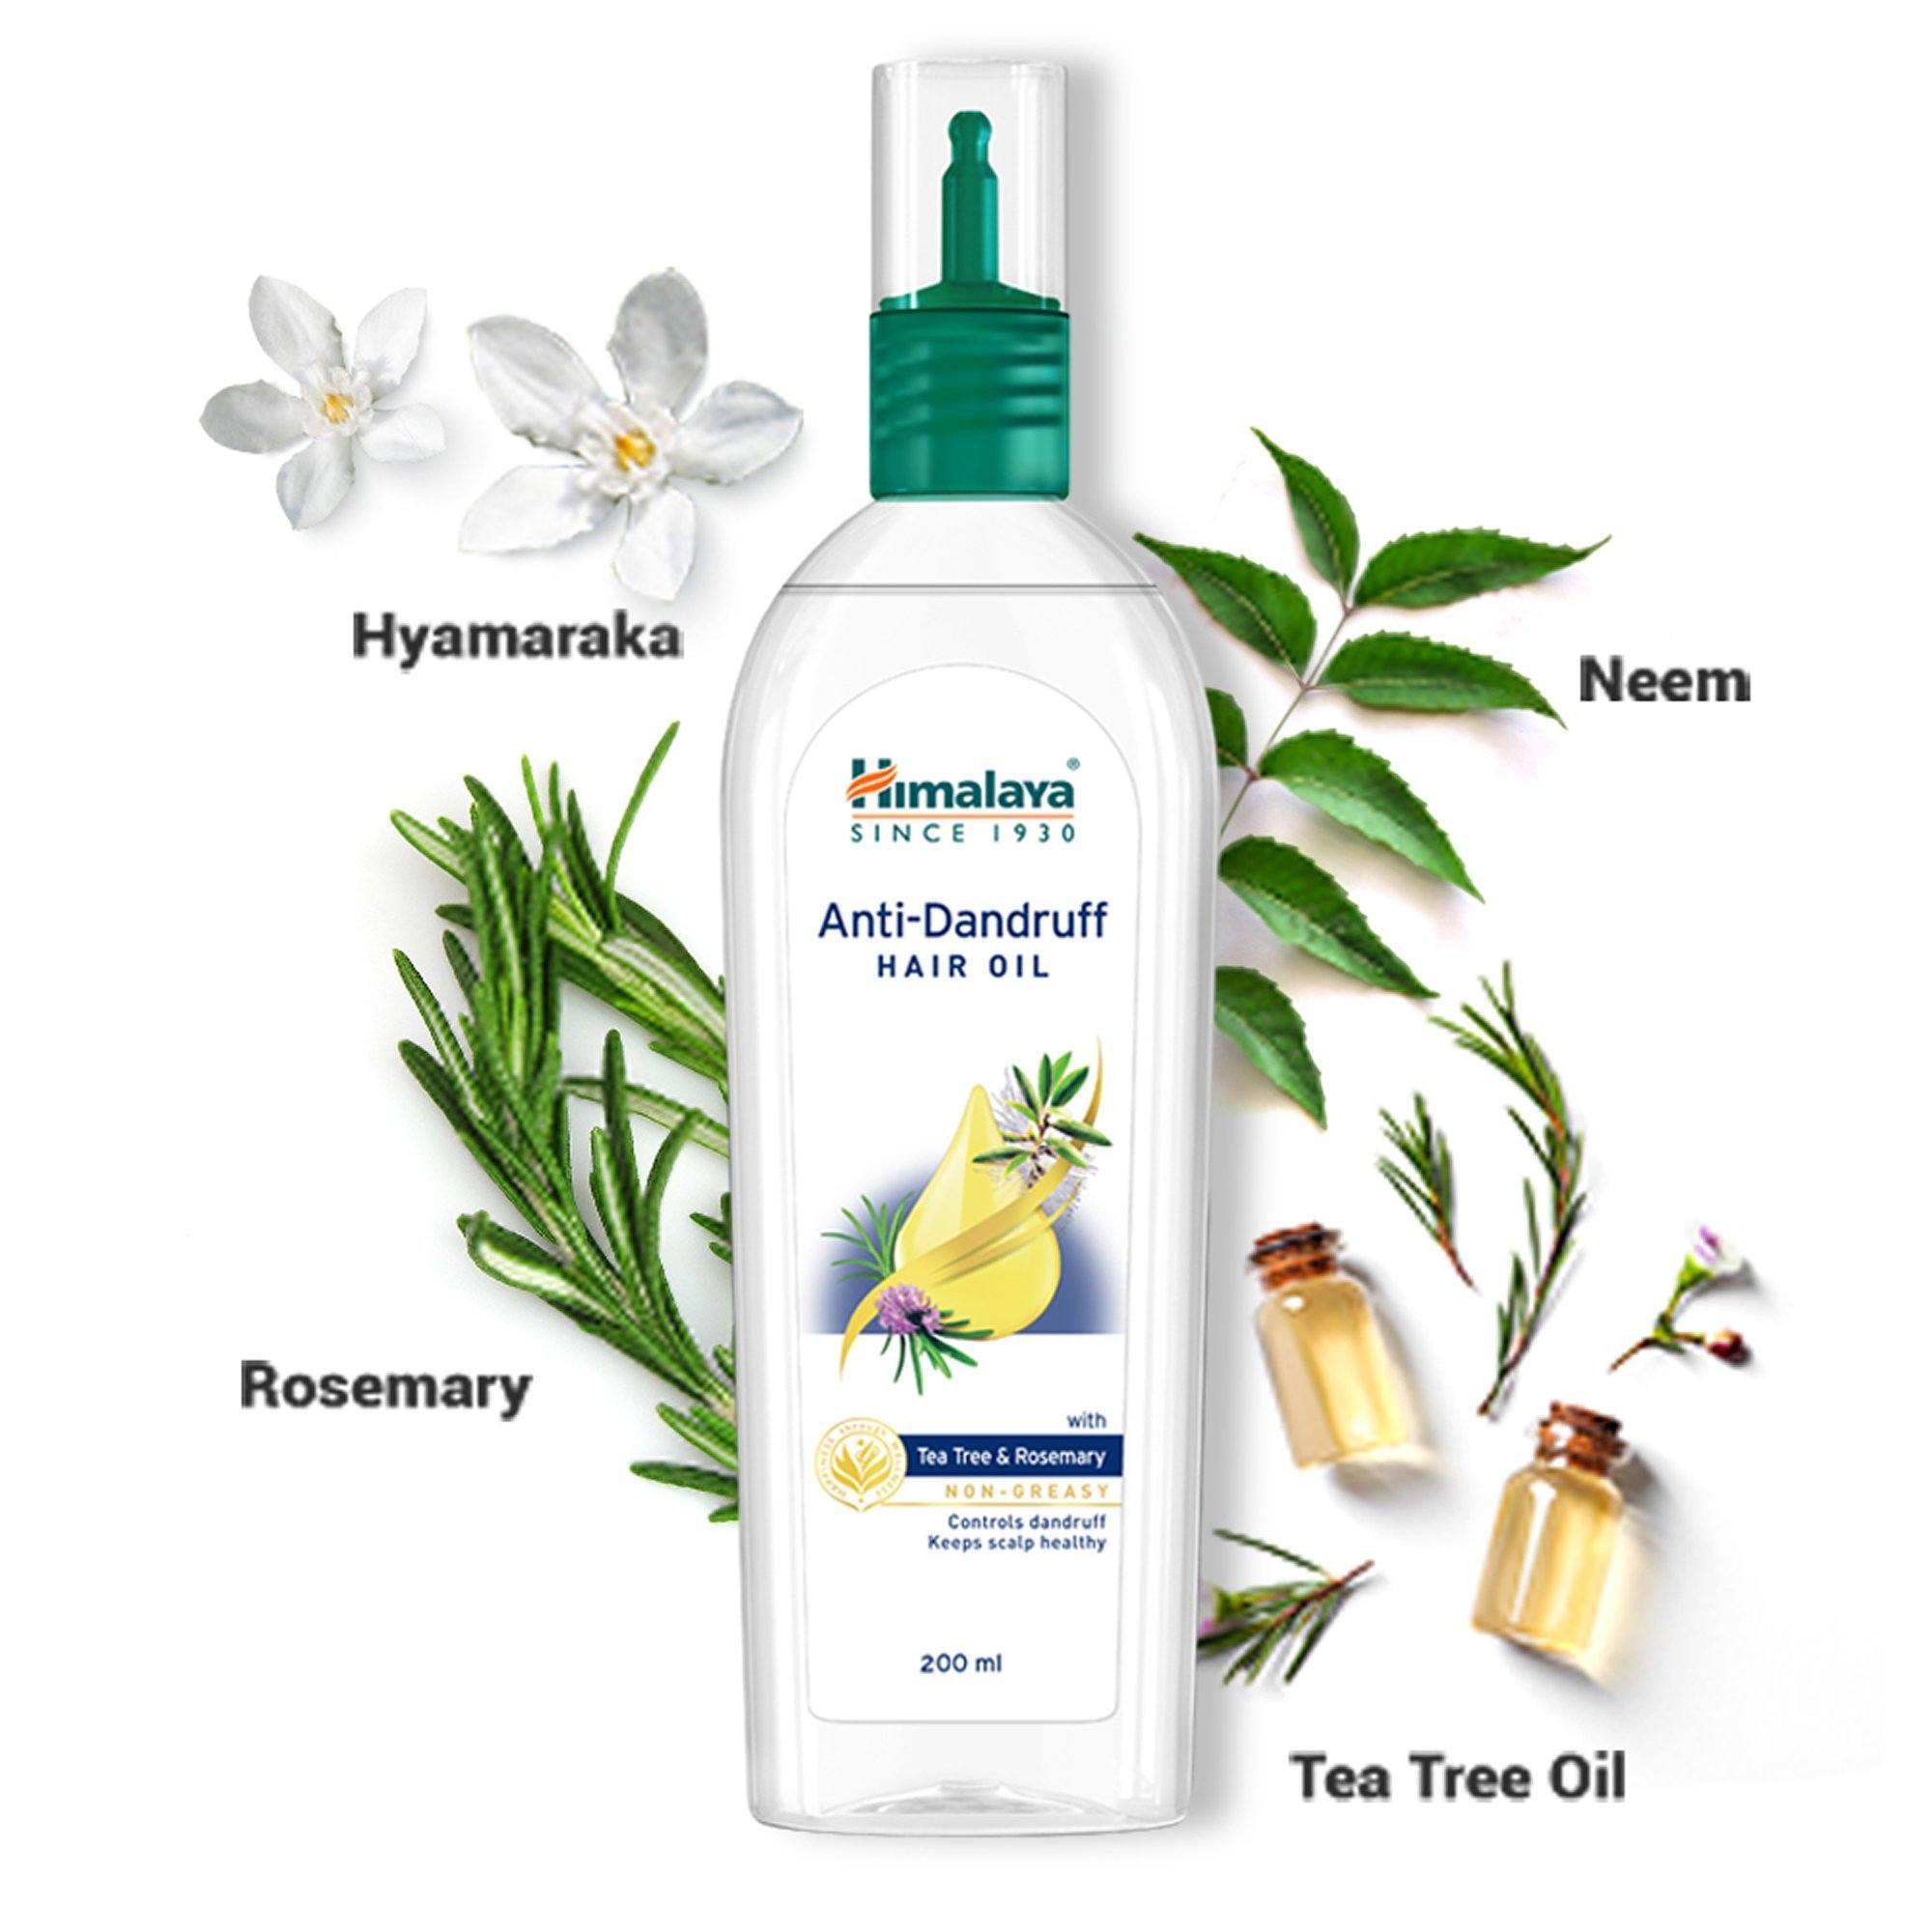 Himalaya Anti-Dandruff Hair Oil 200ml - Product with Herbs